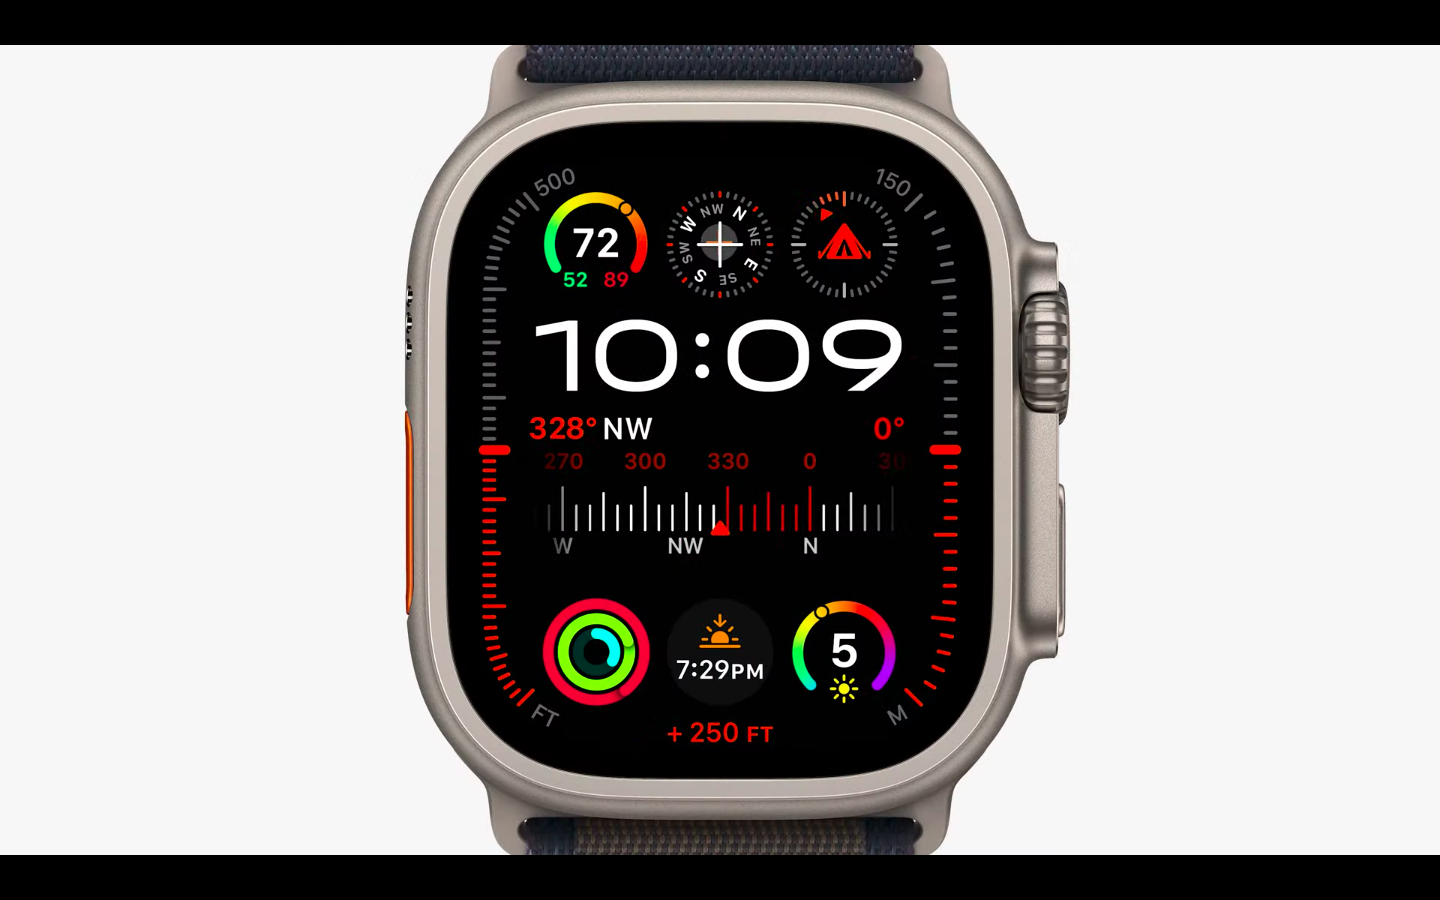 Apple Watch Ultra 2 — экран 3000 нит и автономность до 72 часов на одном заряде за $799